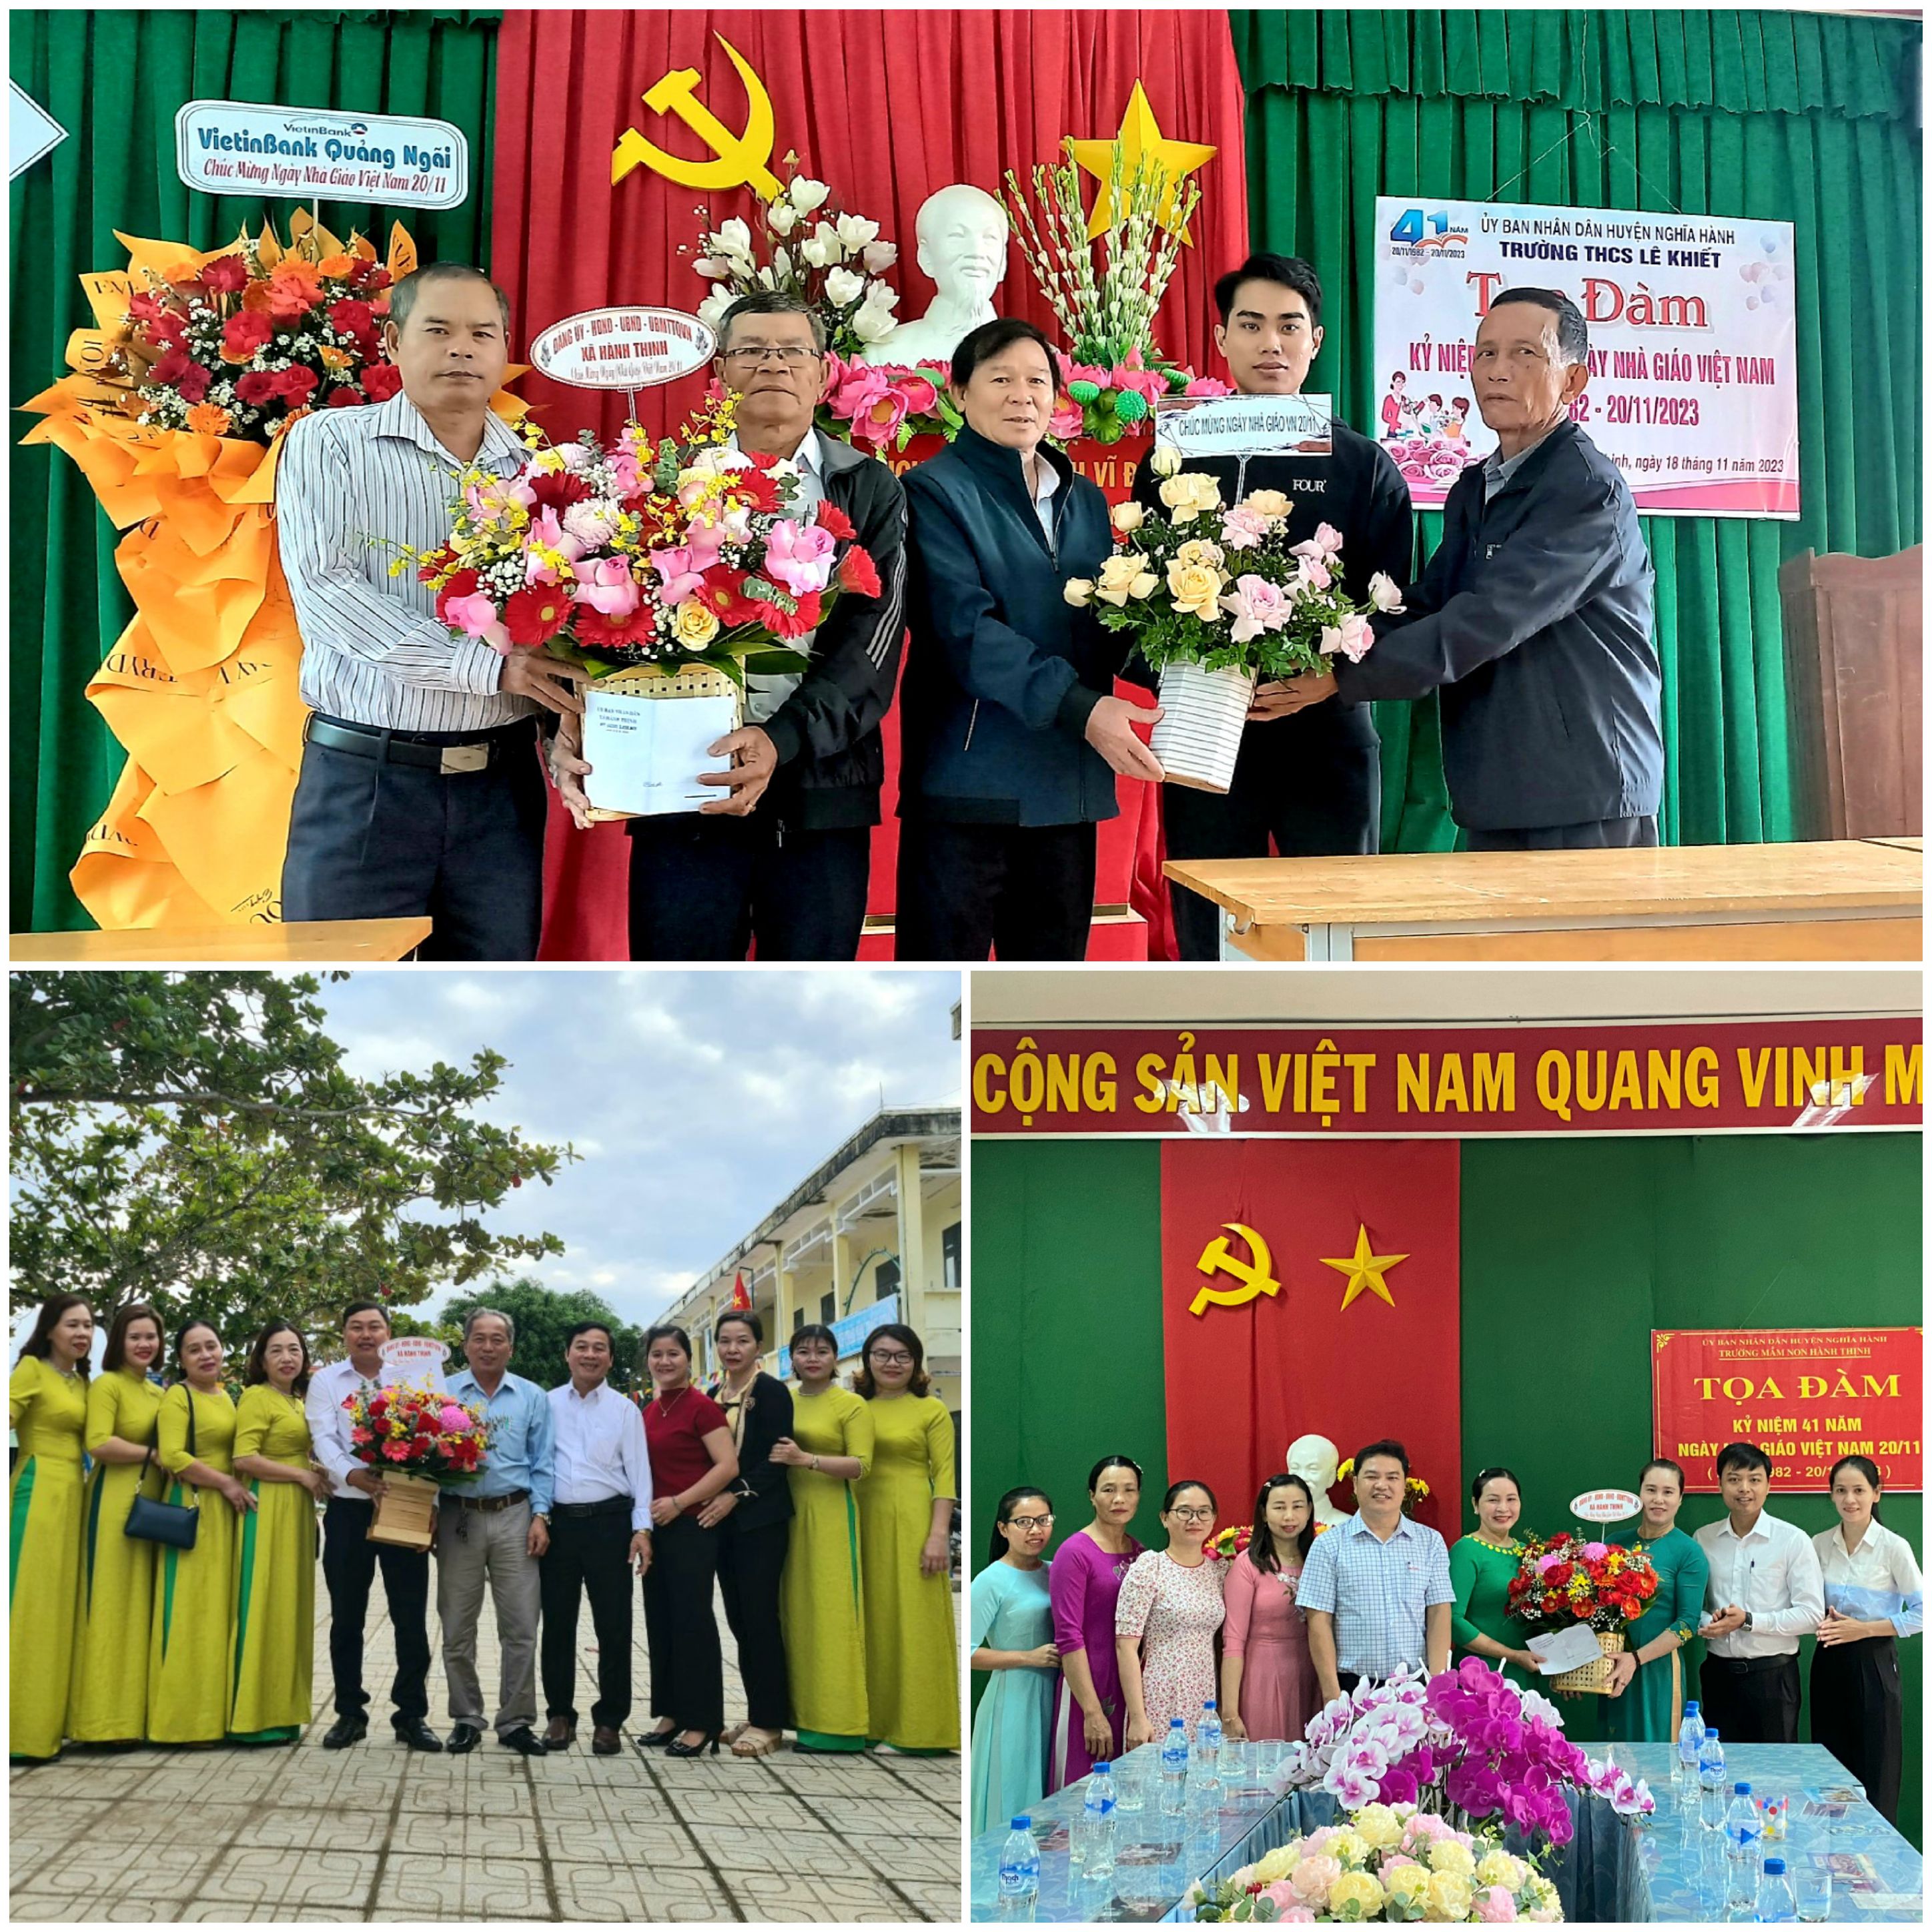 Lãnh đạo xã Hành Thịnh thăm, tặng hoa chức mừng quý thầy/ cô giáo nhân kỷ niệm 41 năm Ngày Nhà Giáo Việt Nam (20/11/1982 - 20/11/2023)